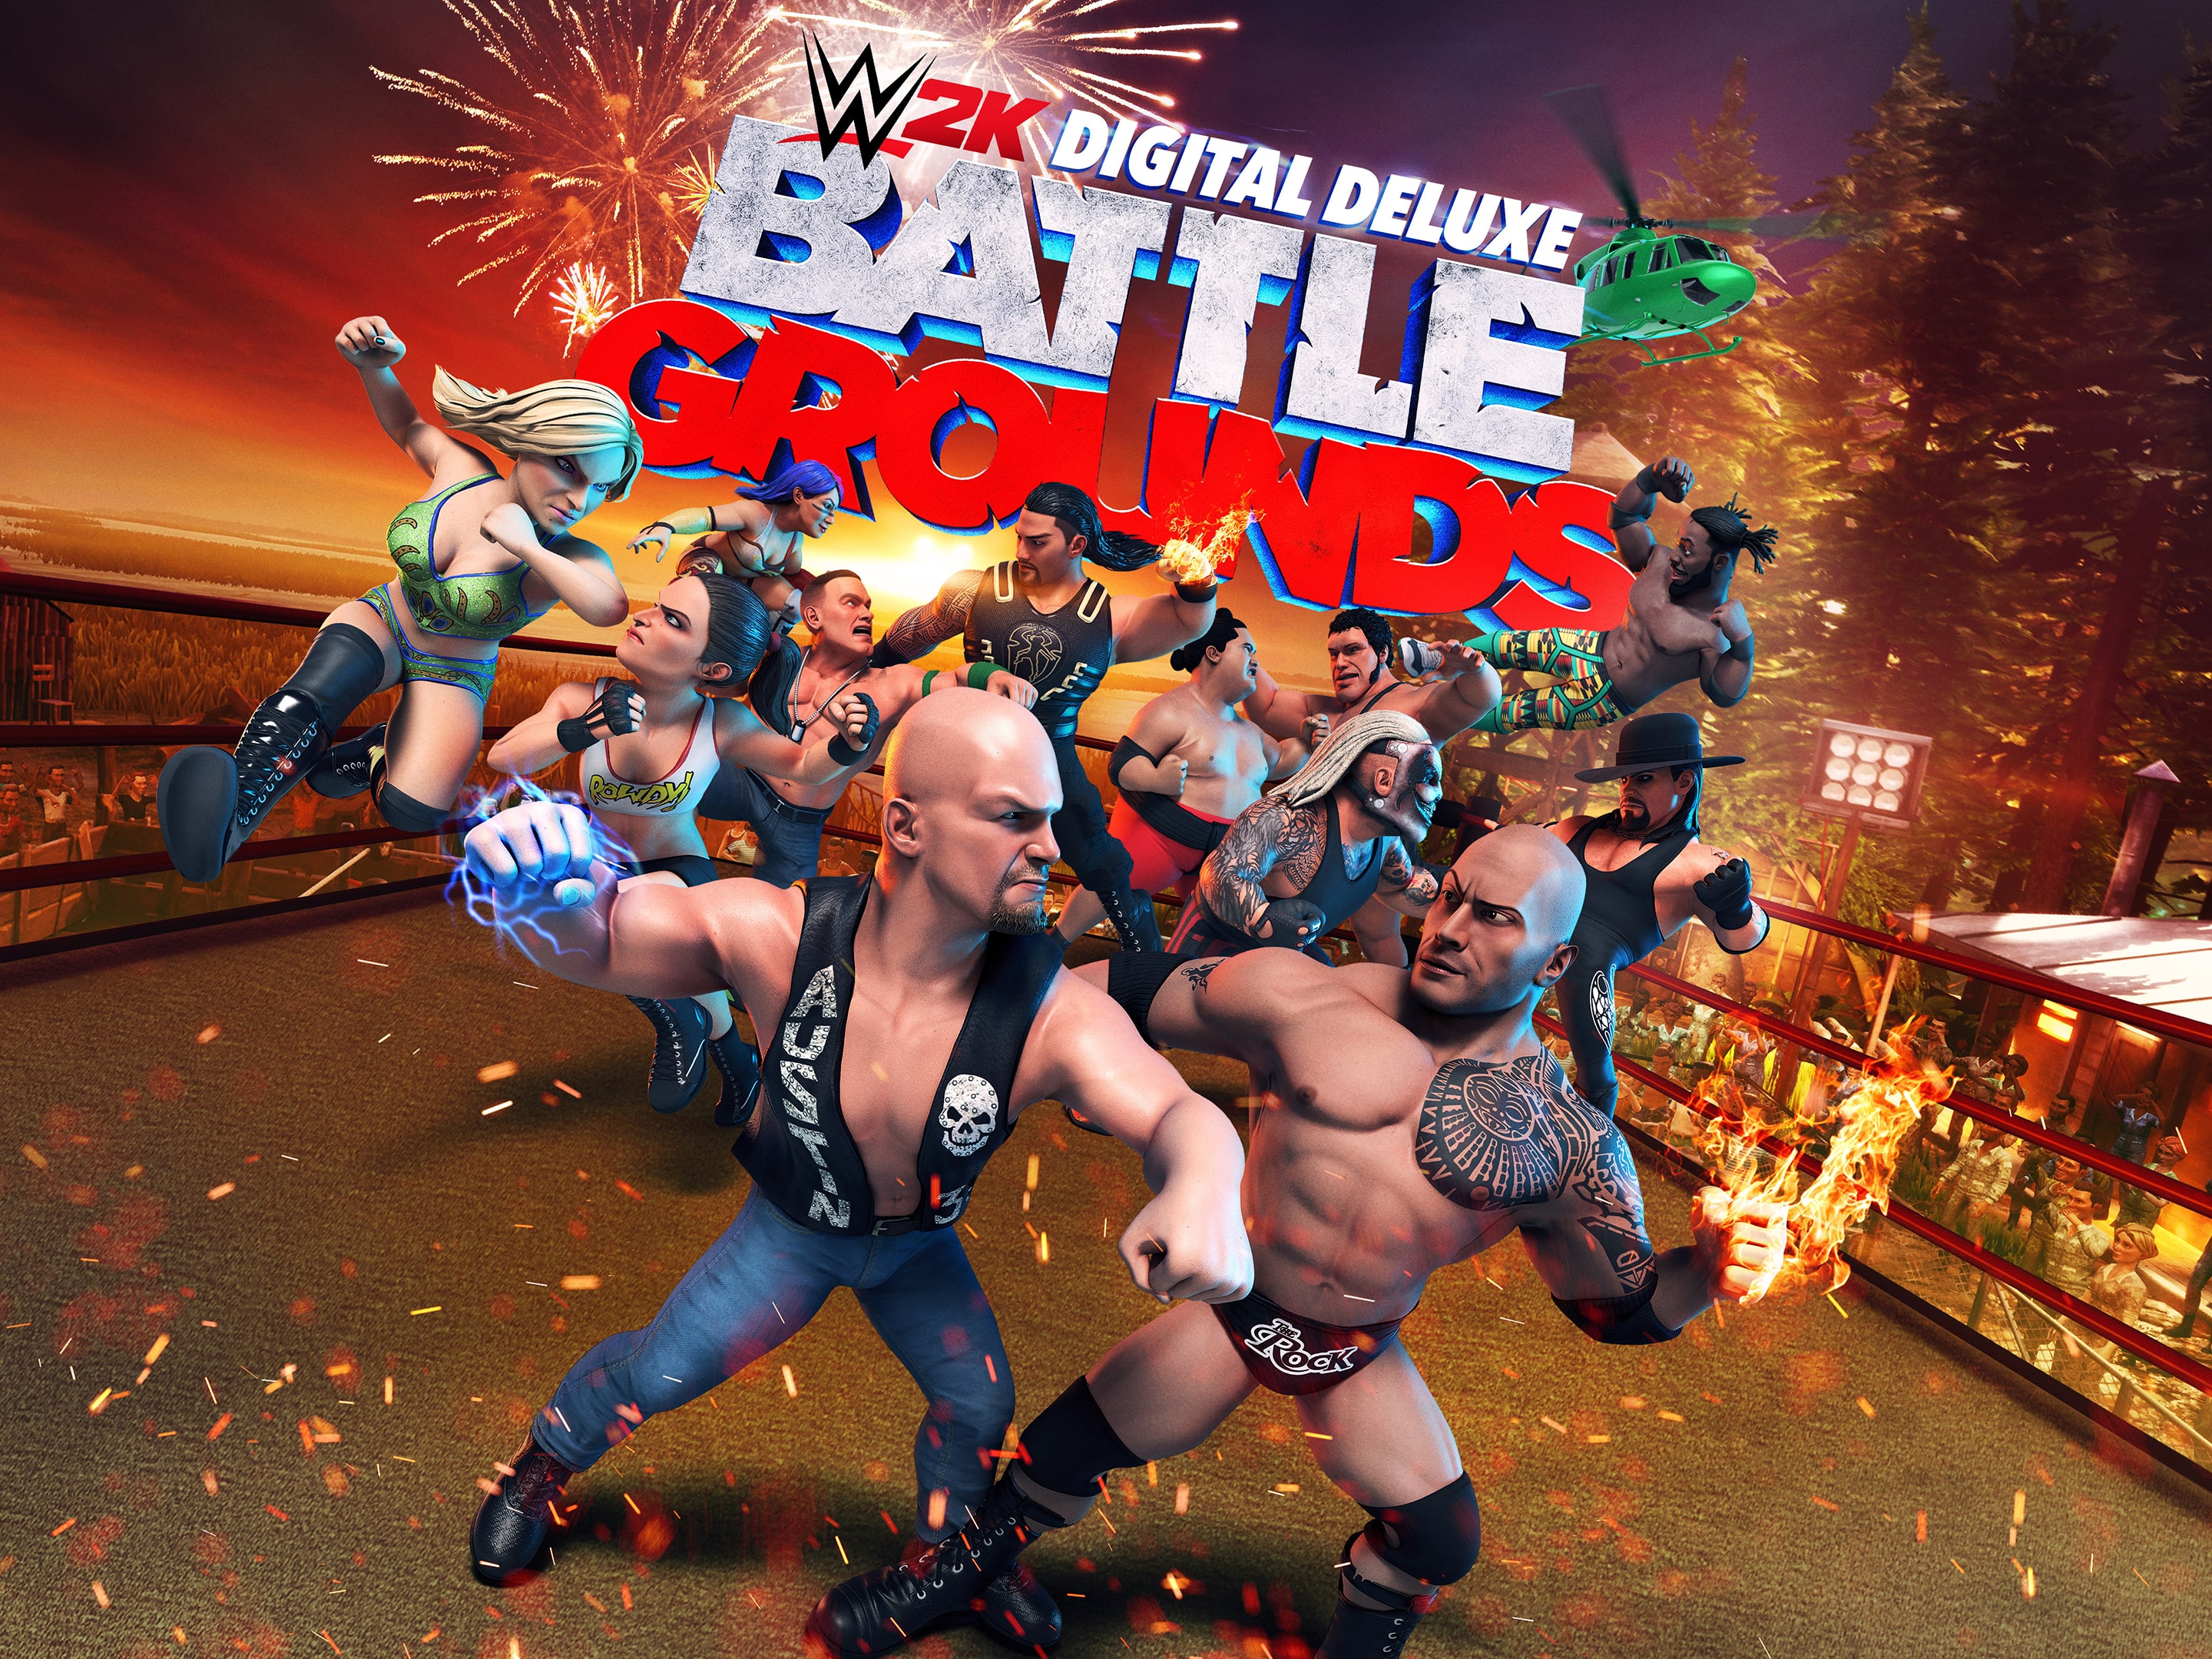  WWE 2K Games Battlegrounds - PlayStation 4 Standard